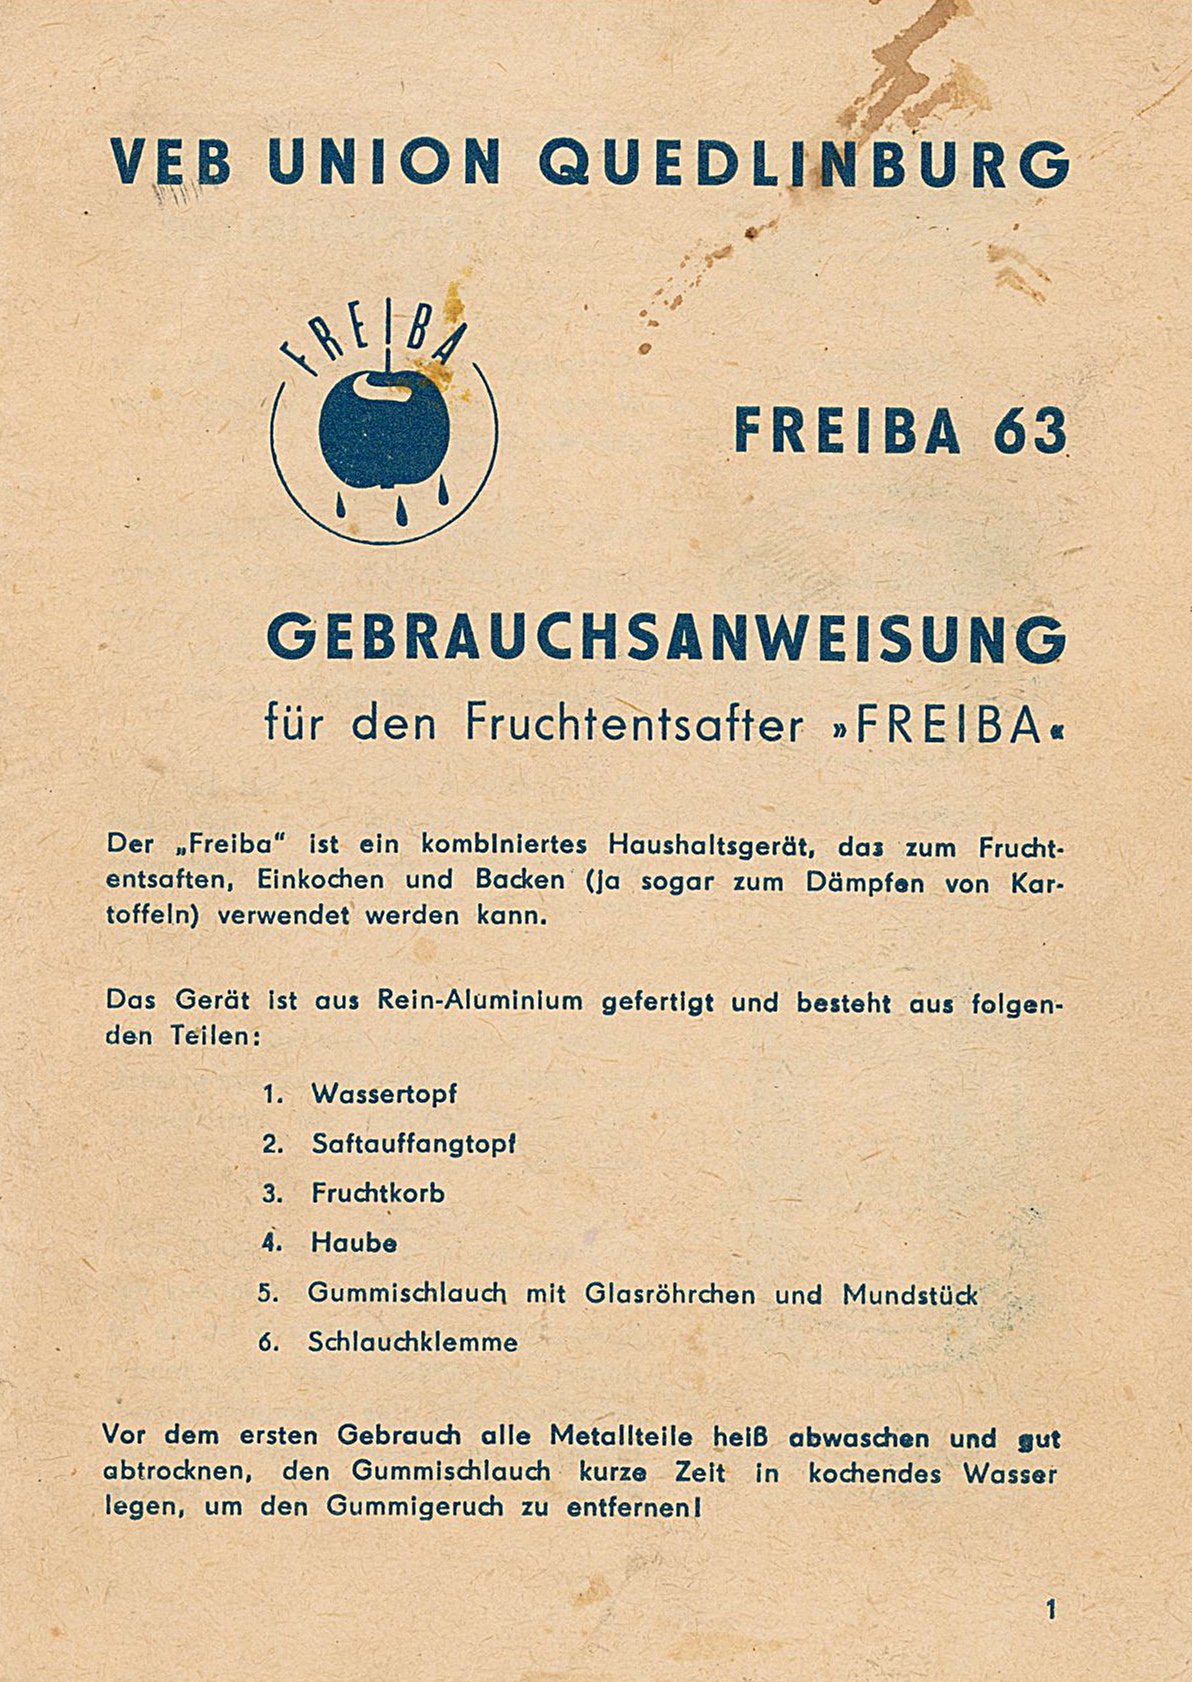 Gebrauchsanweisung "Fruchtentsafter FREIBA der VEB Union Quedlinburg" (Museum Wolmirstedt RR-F)